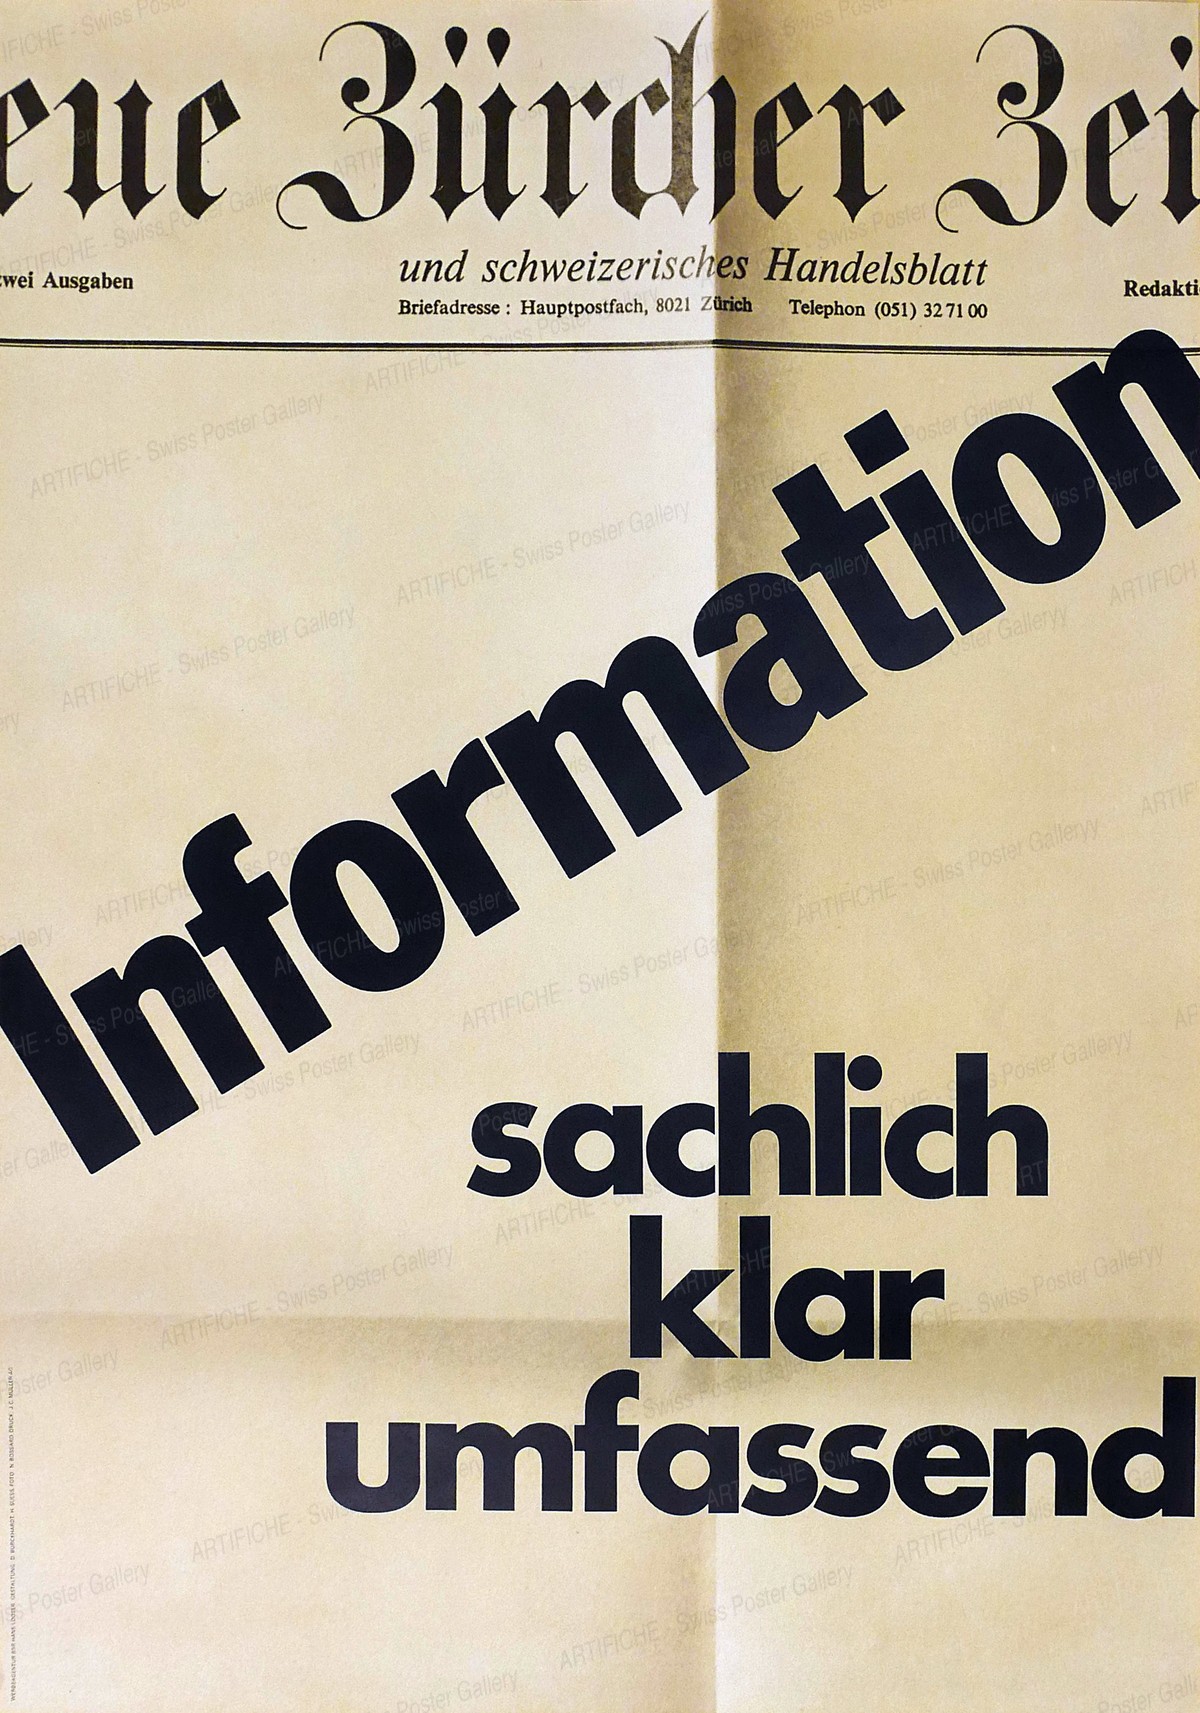 Neue Zürcher Zeitung – Information sachlich klar umfassend, Hans Looser